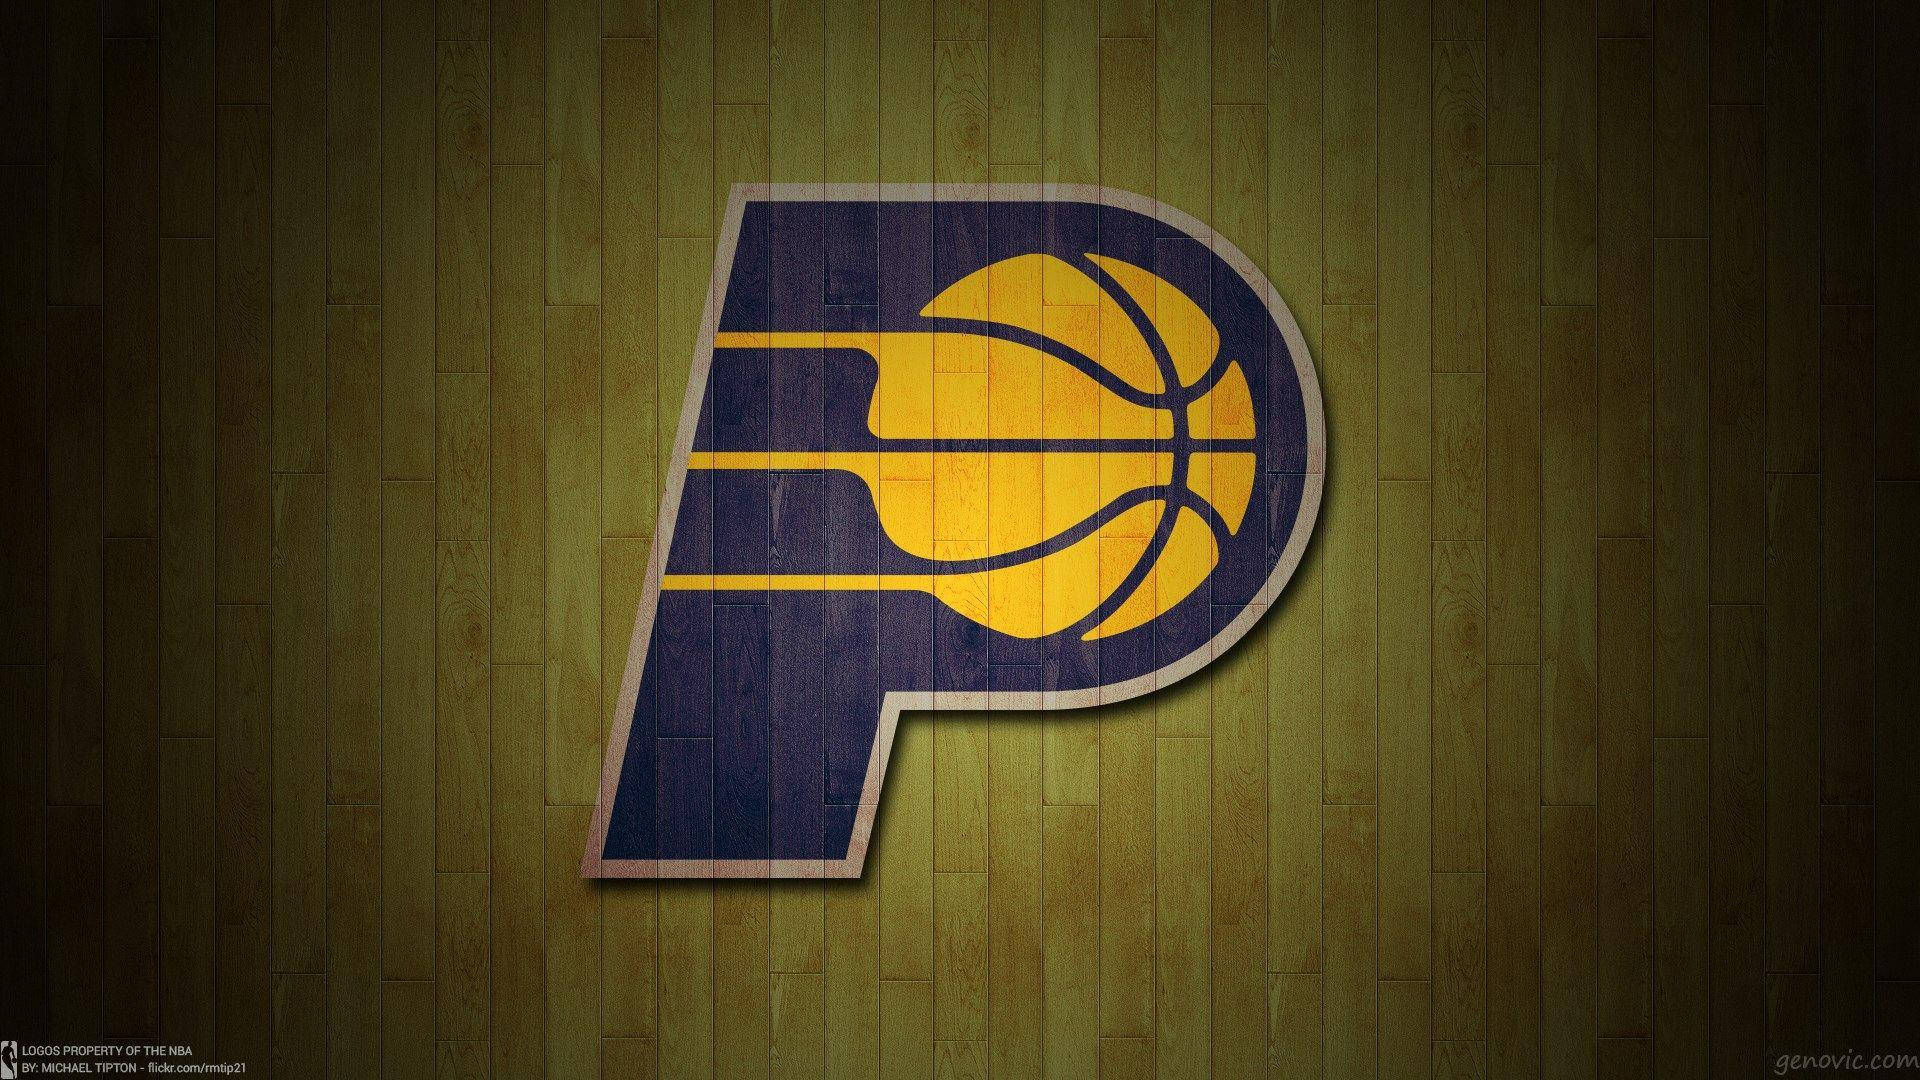 Indiana Pacers Wooden Floor Logo Wallpaper